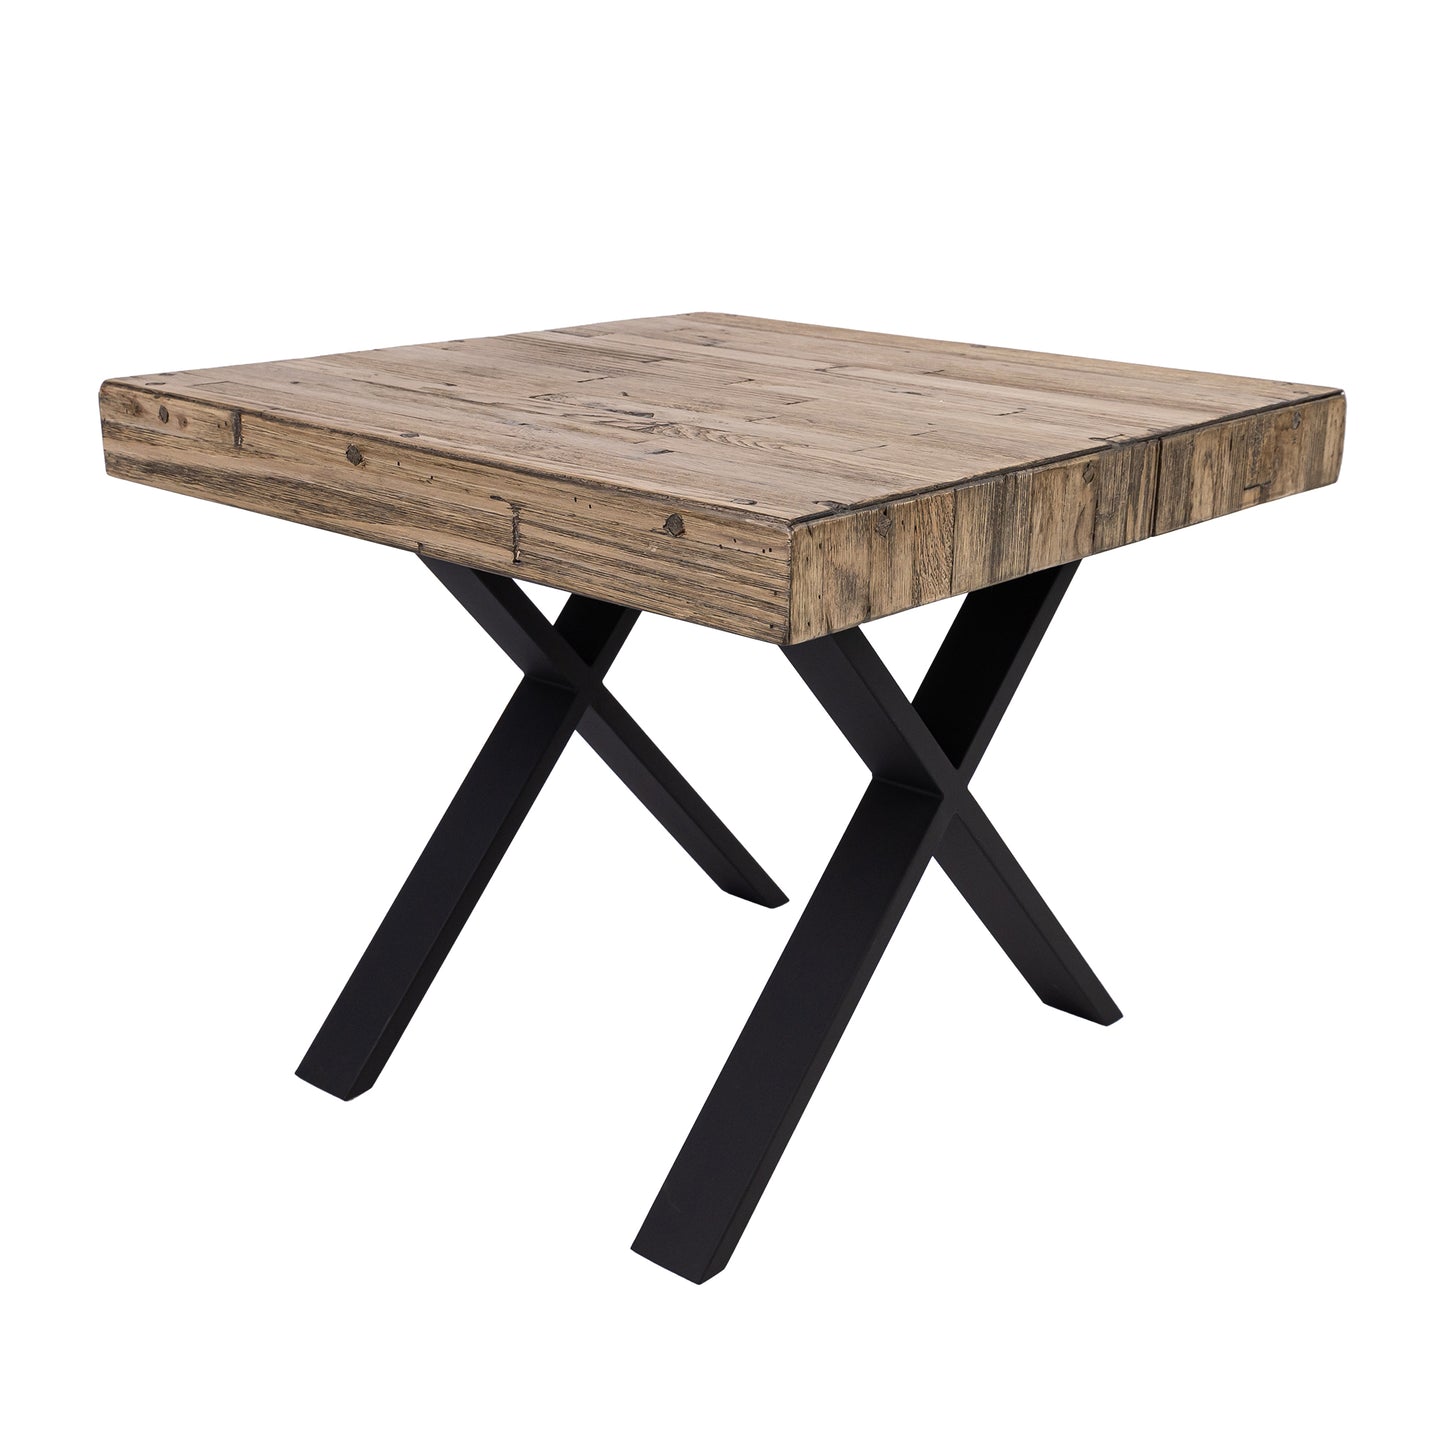 Anika Laminated Solid Pine Top Metal Leg Side Table 60cm  - Smoke